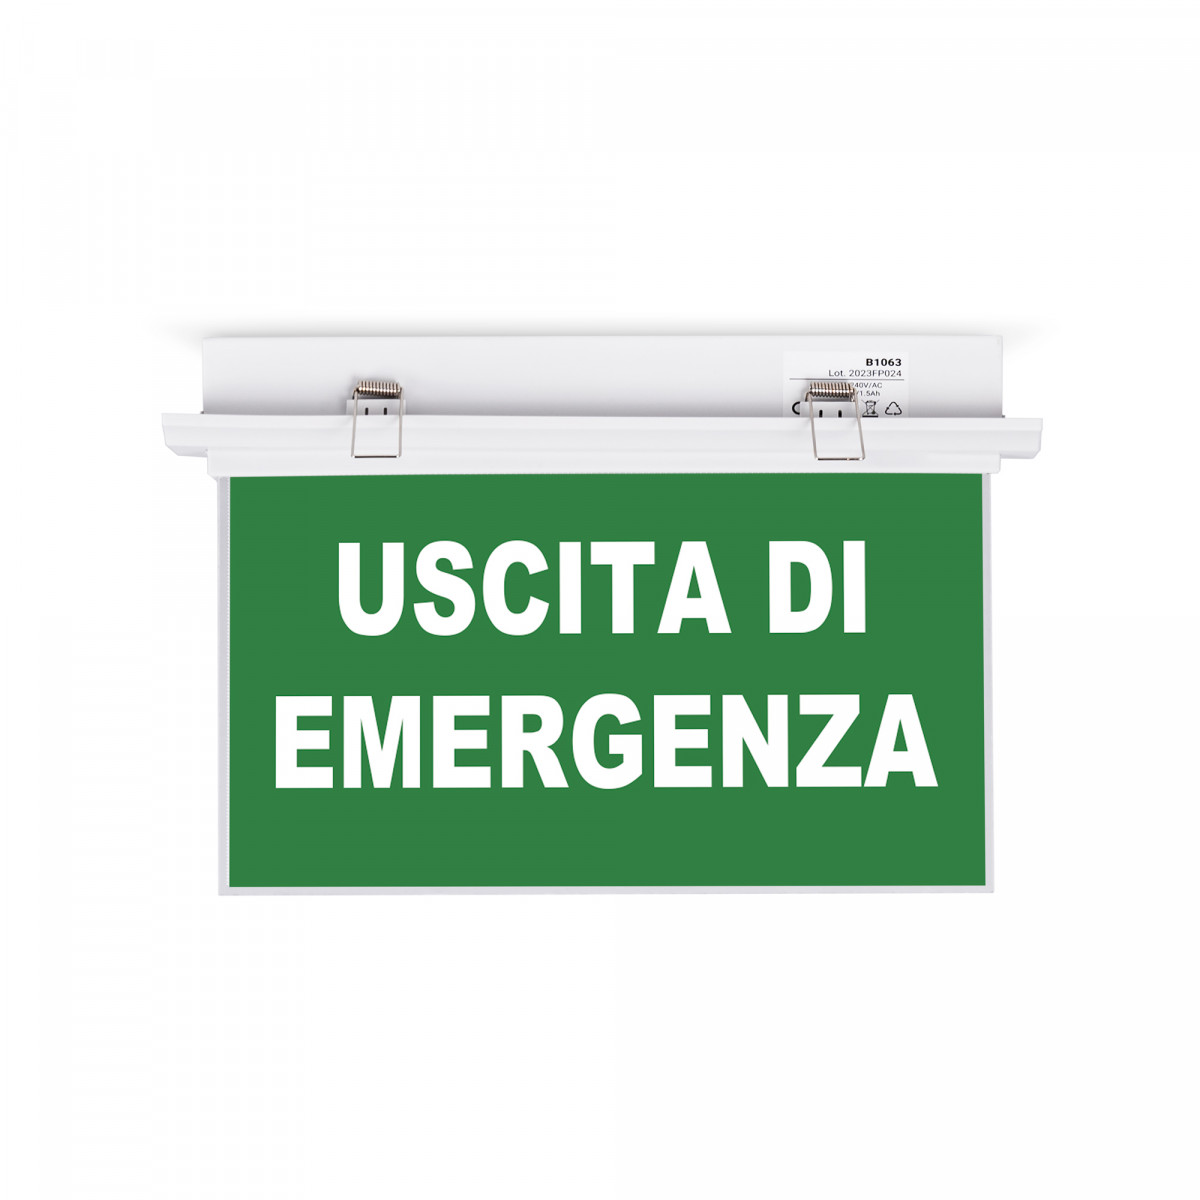 Luce di emergenza permanente con cartello "Uscita di emergenza" - Da incasso